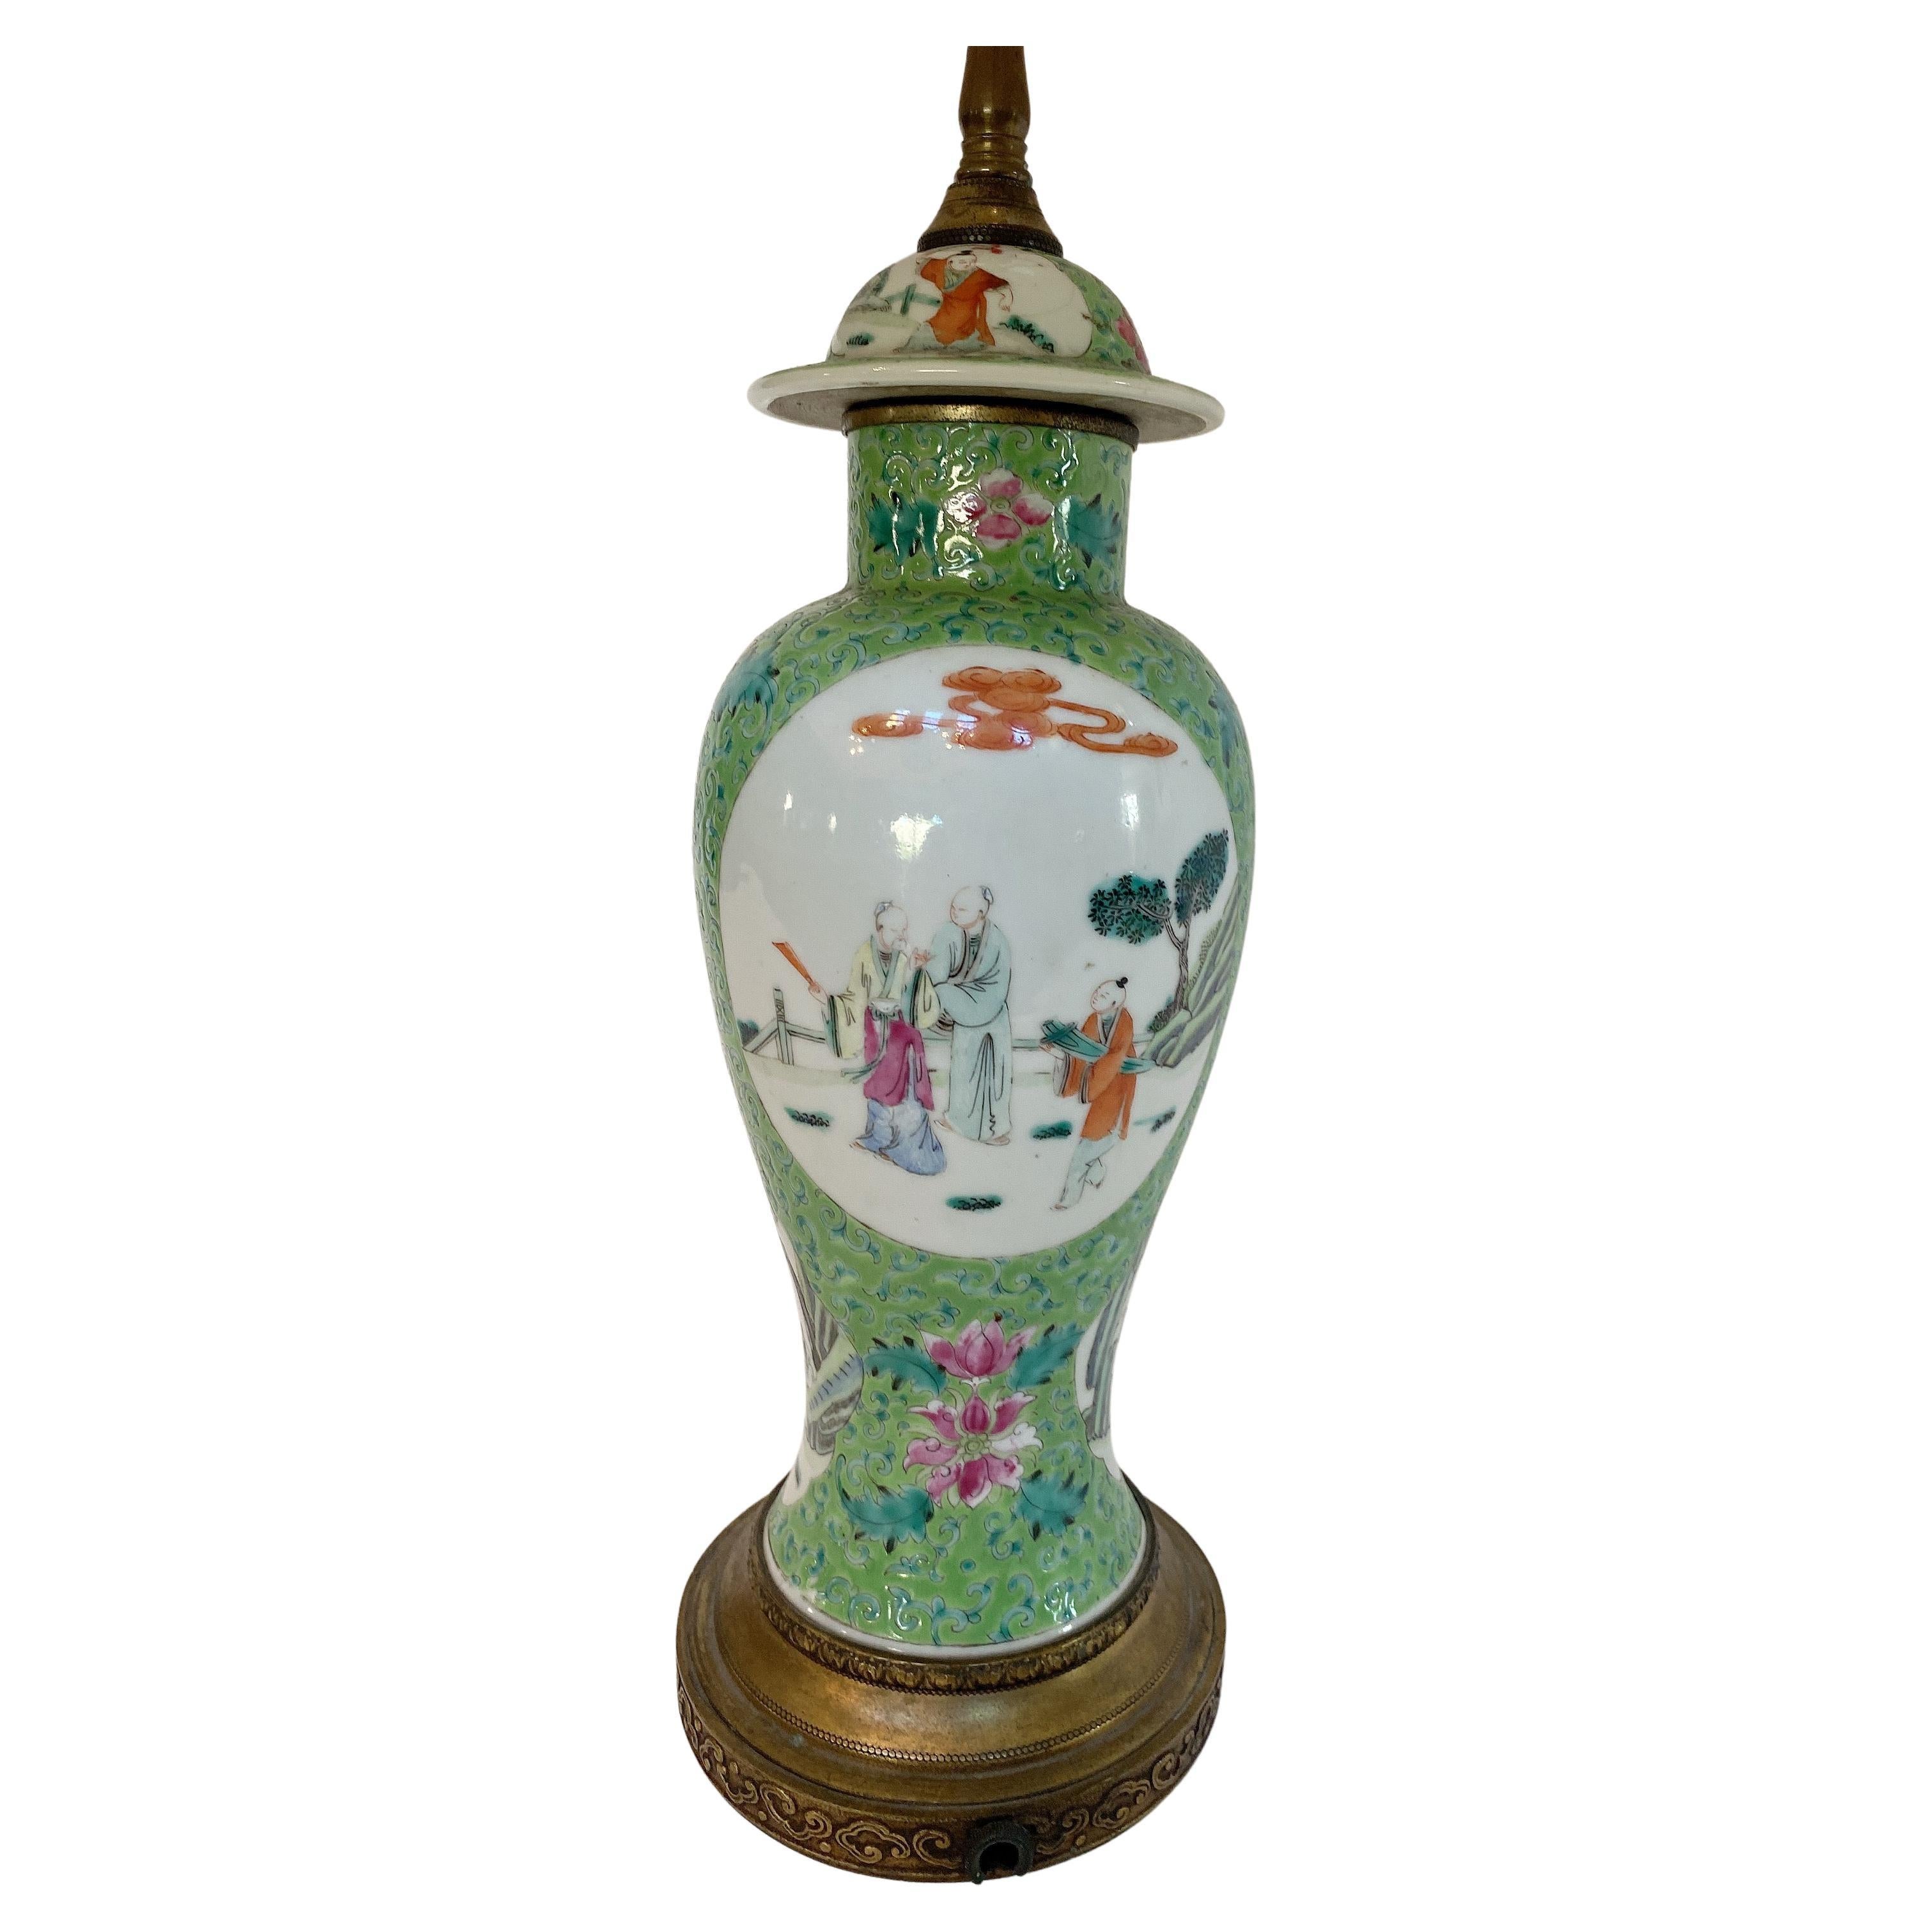 RK216 Große chinesische Deckelvase Vase Porzellan grün-blau glasiert China 